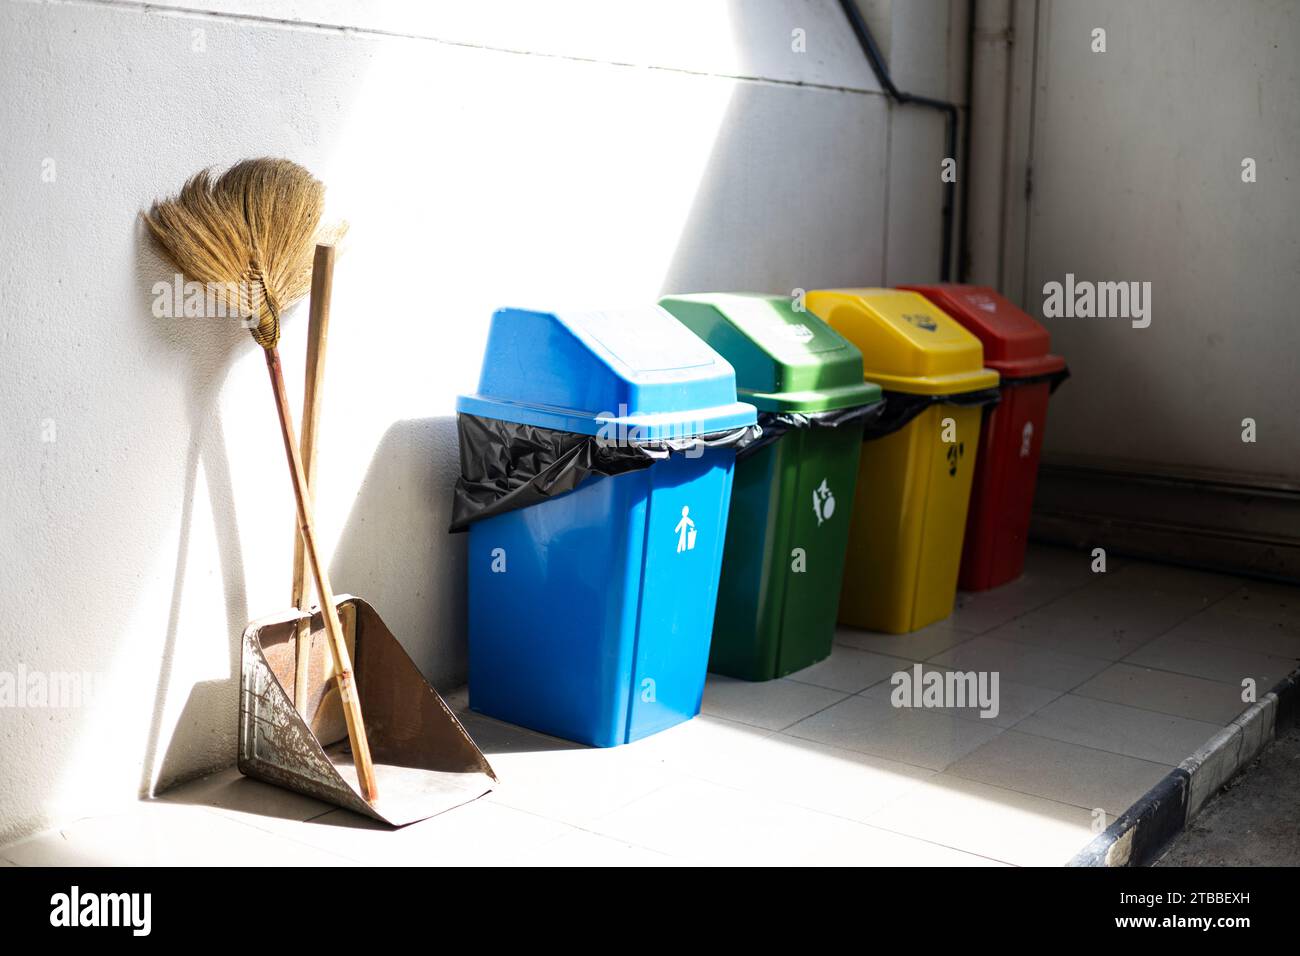 Poubelles multicolores. Bacs de recyclage à un poste de recyclage recyclage, déchets, environnement, bac de recyclage, bac à ordures Banque D'Images